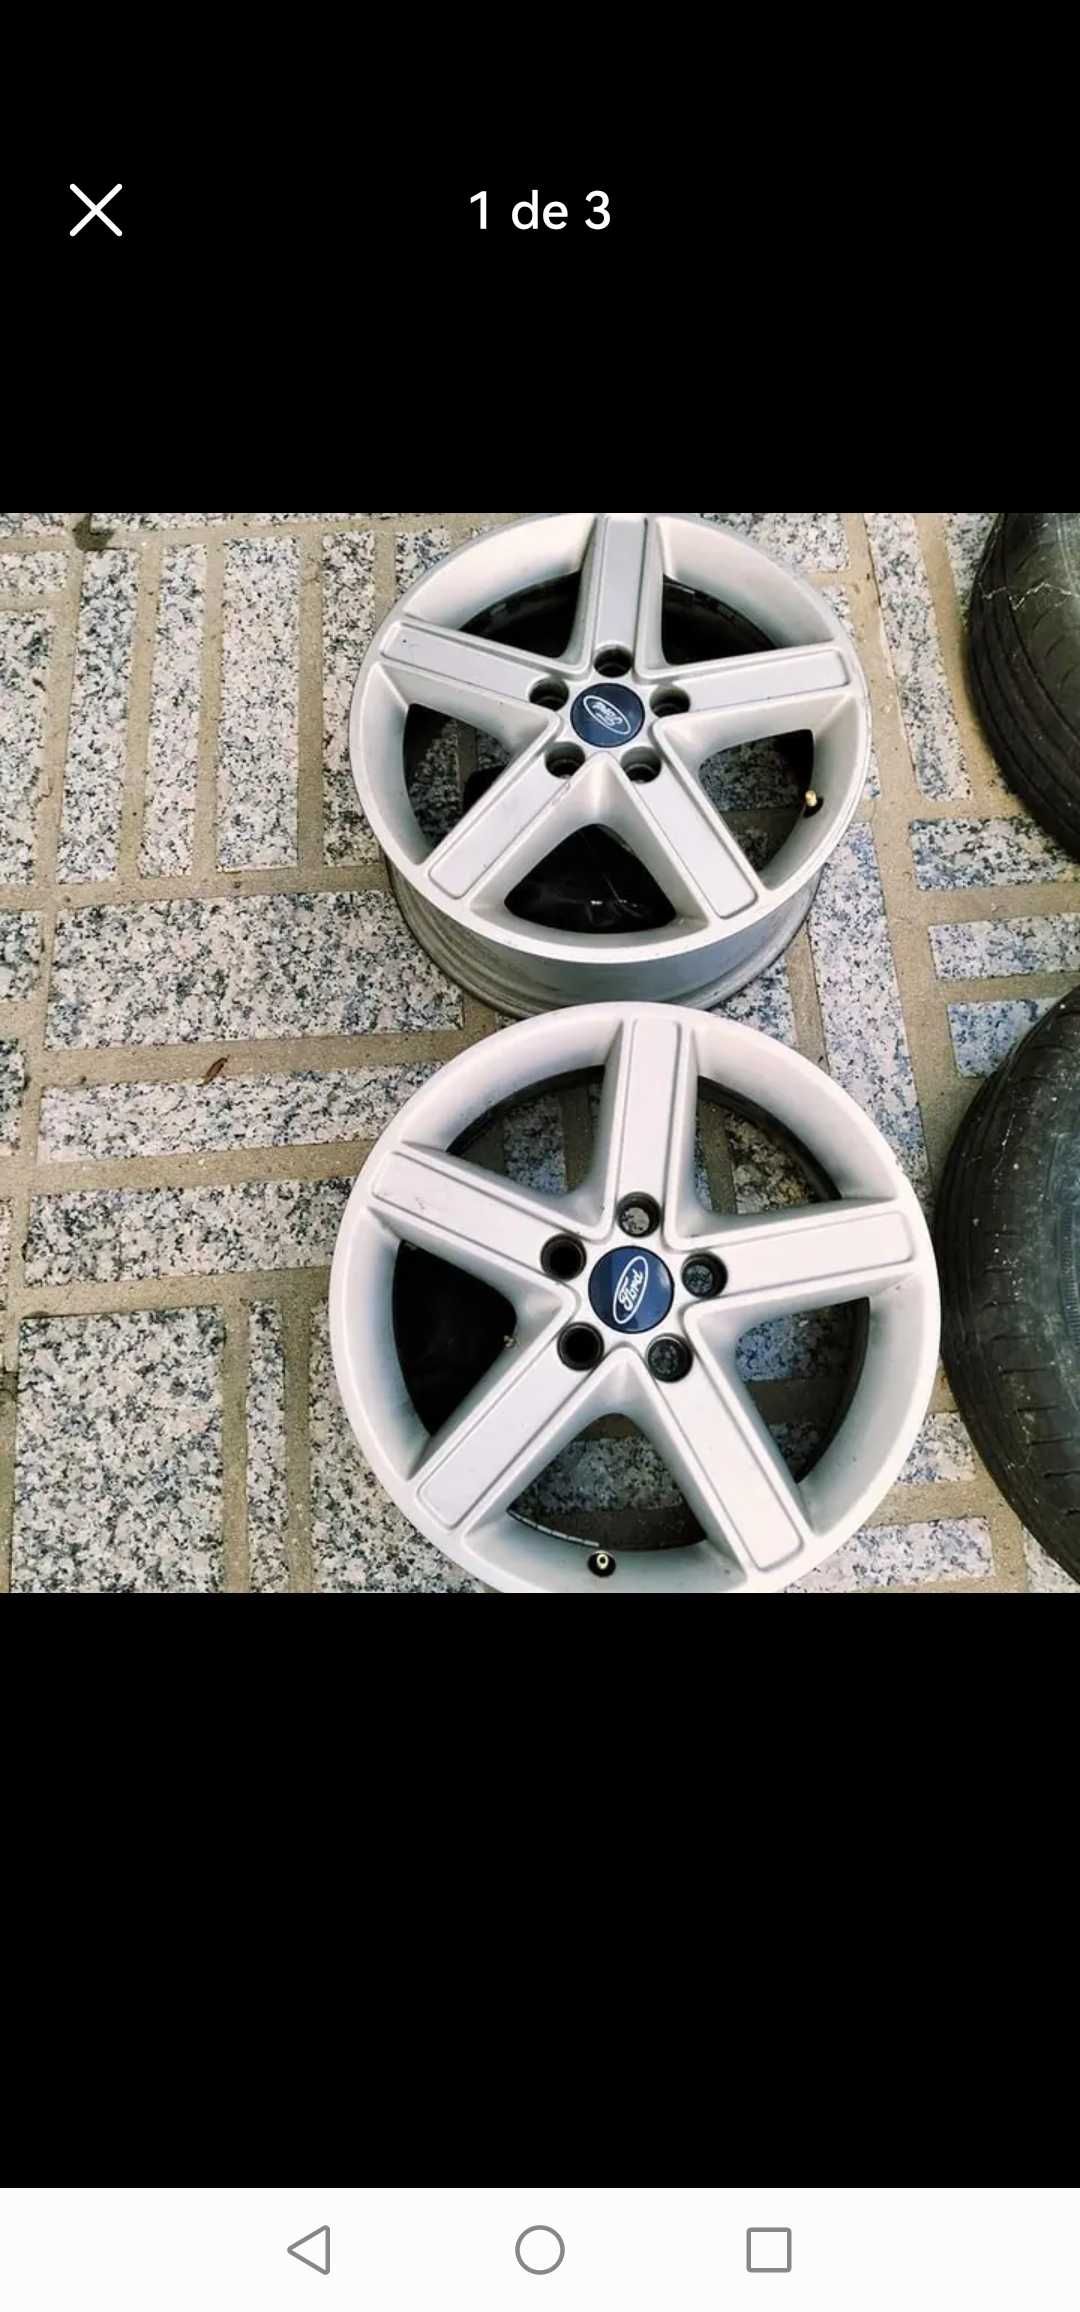 Jantes Ford com dois pneus